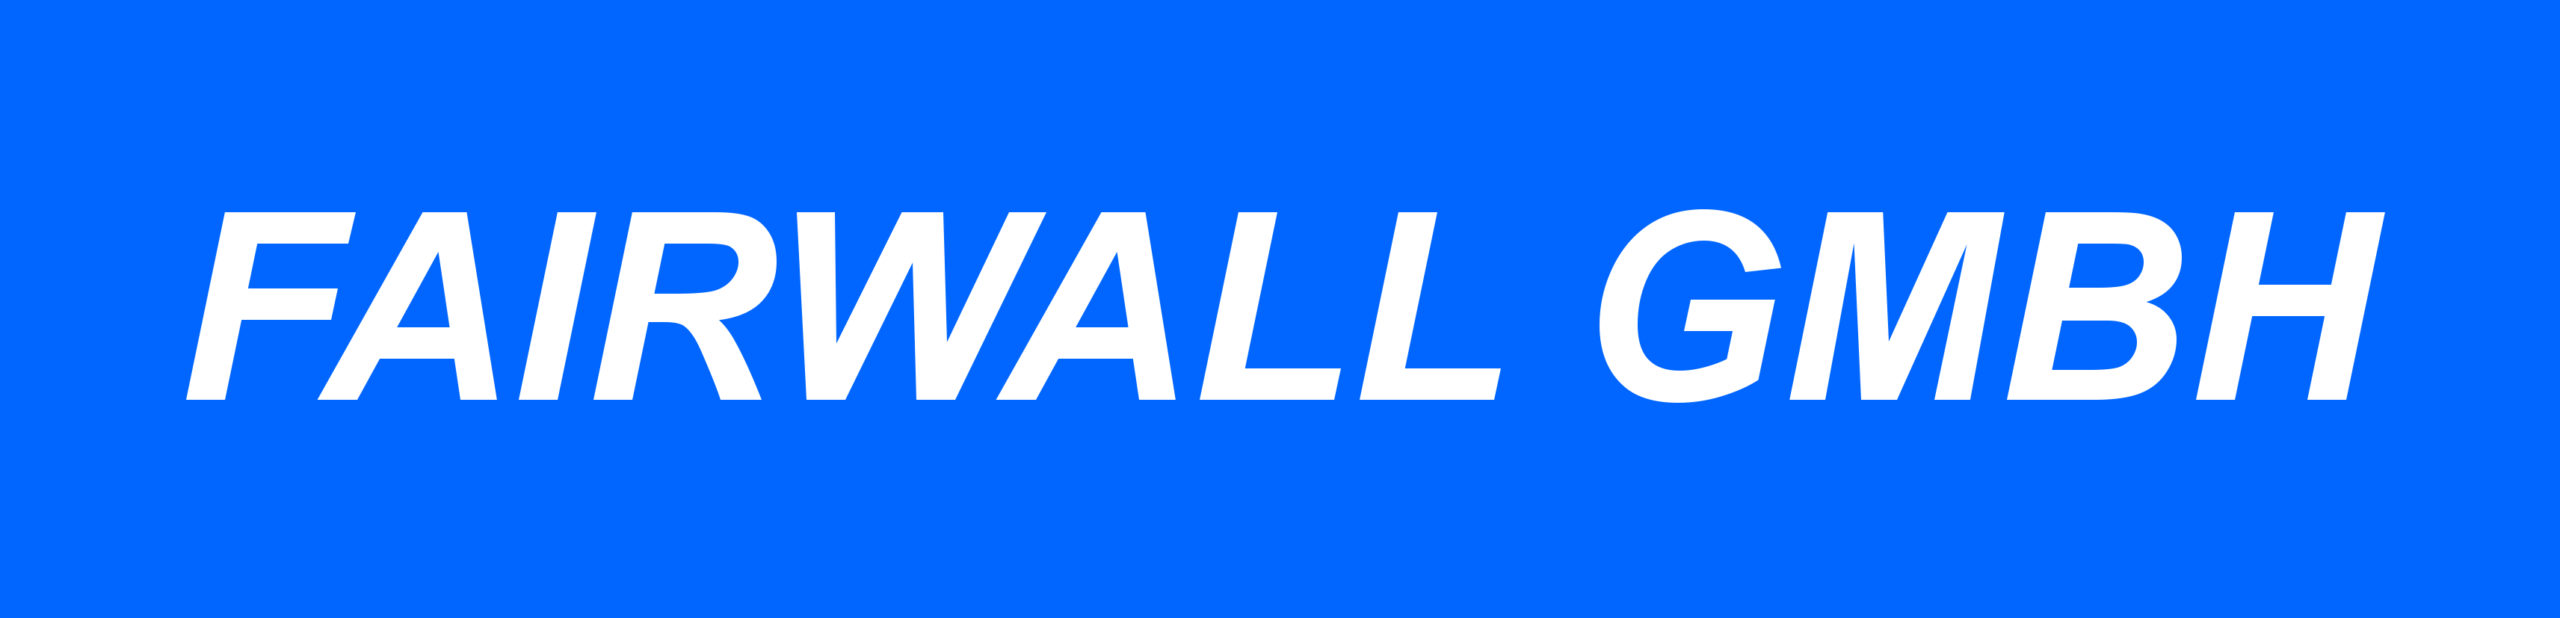 Fairwall GmbH